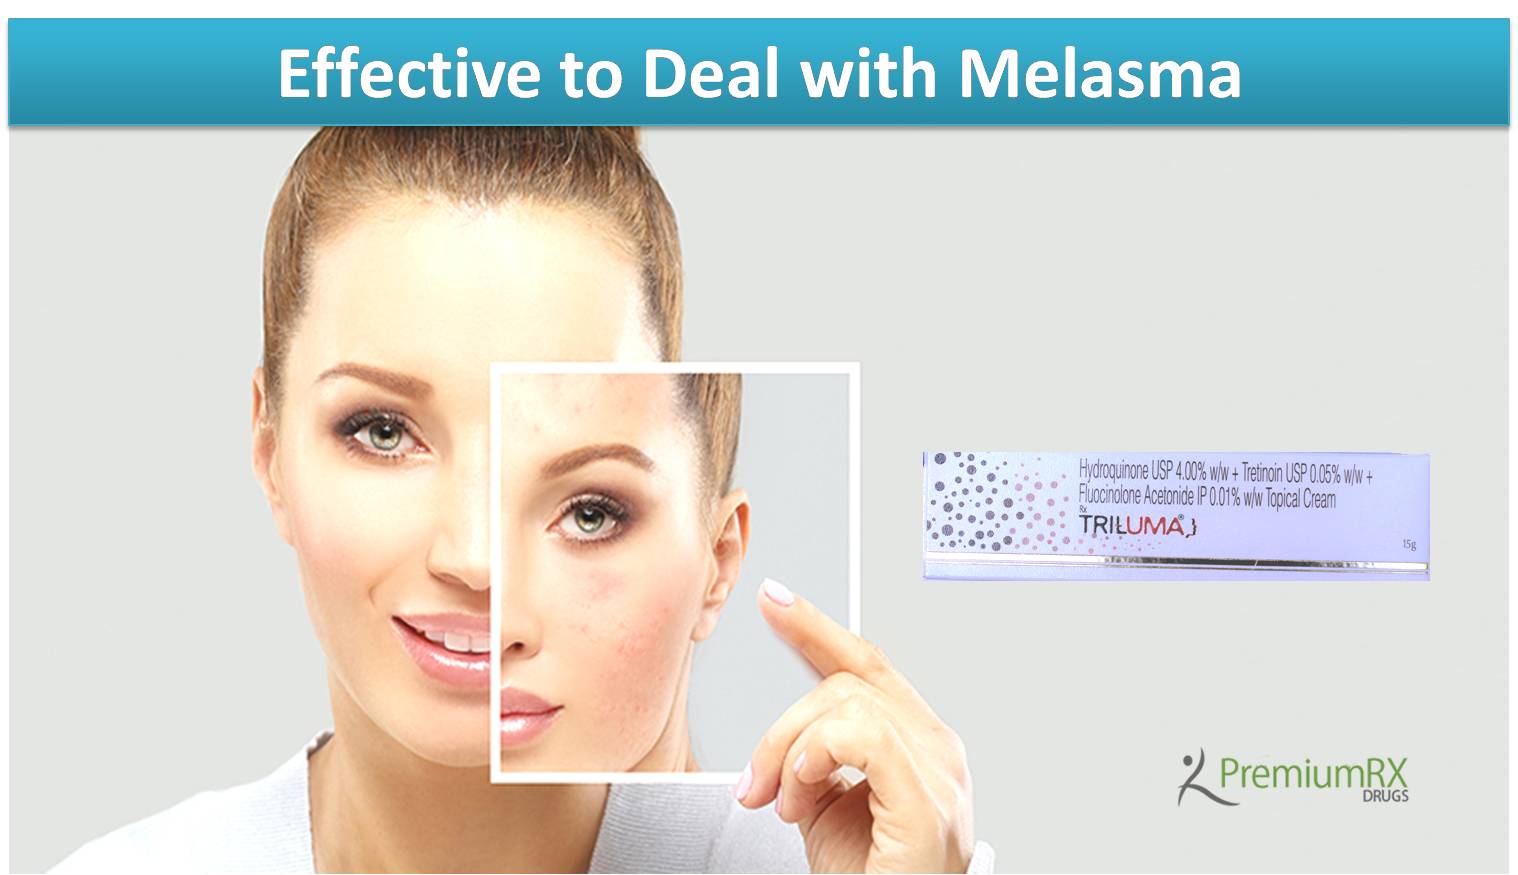 Triluma Cream for Melasma Care